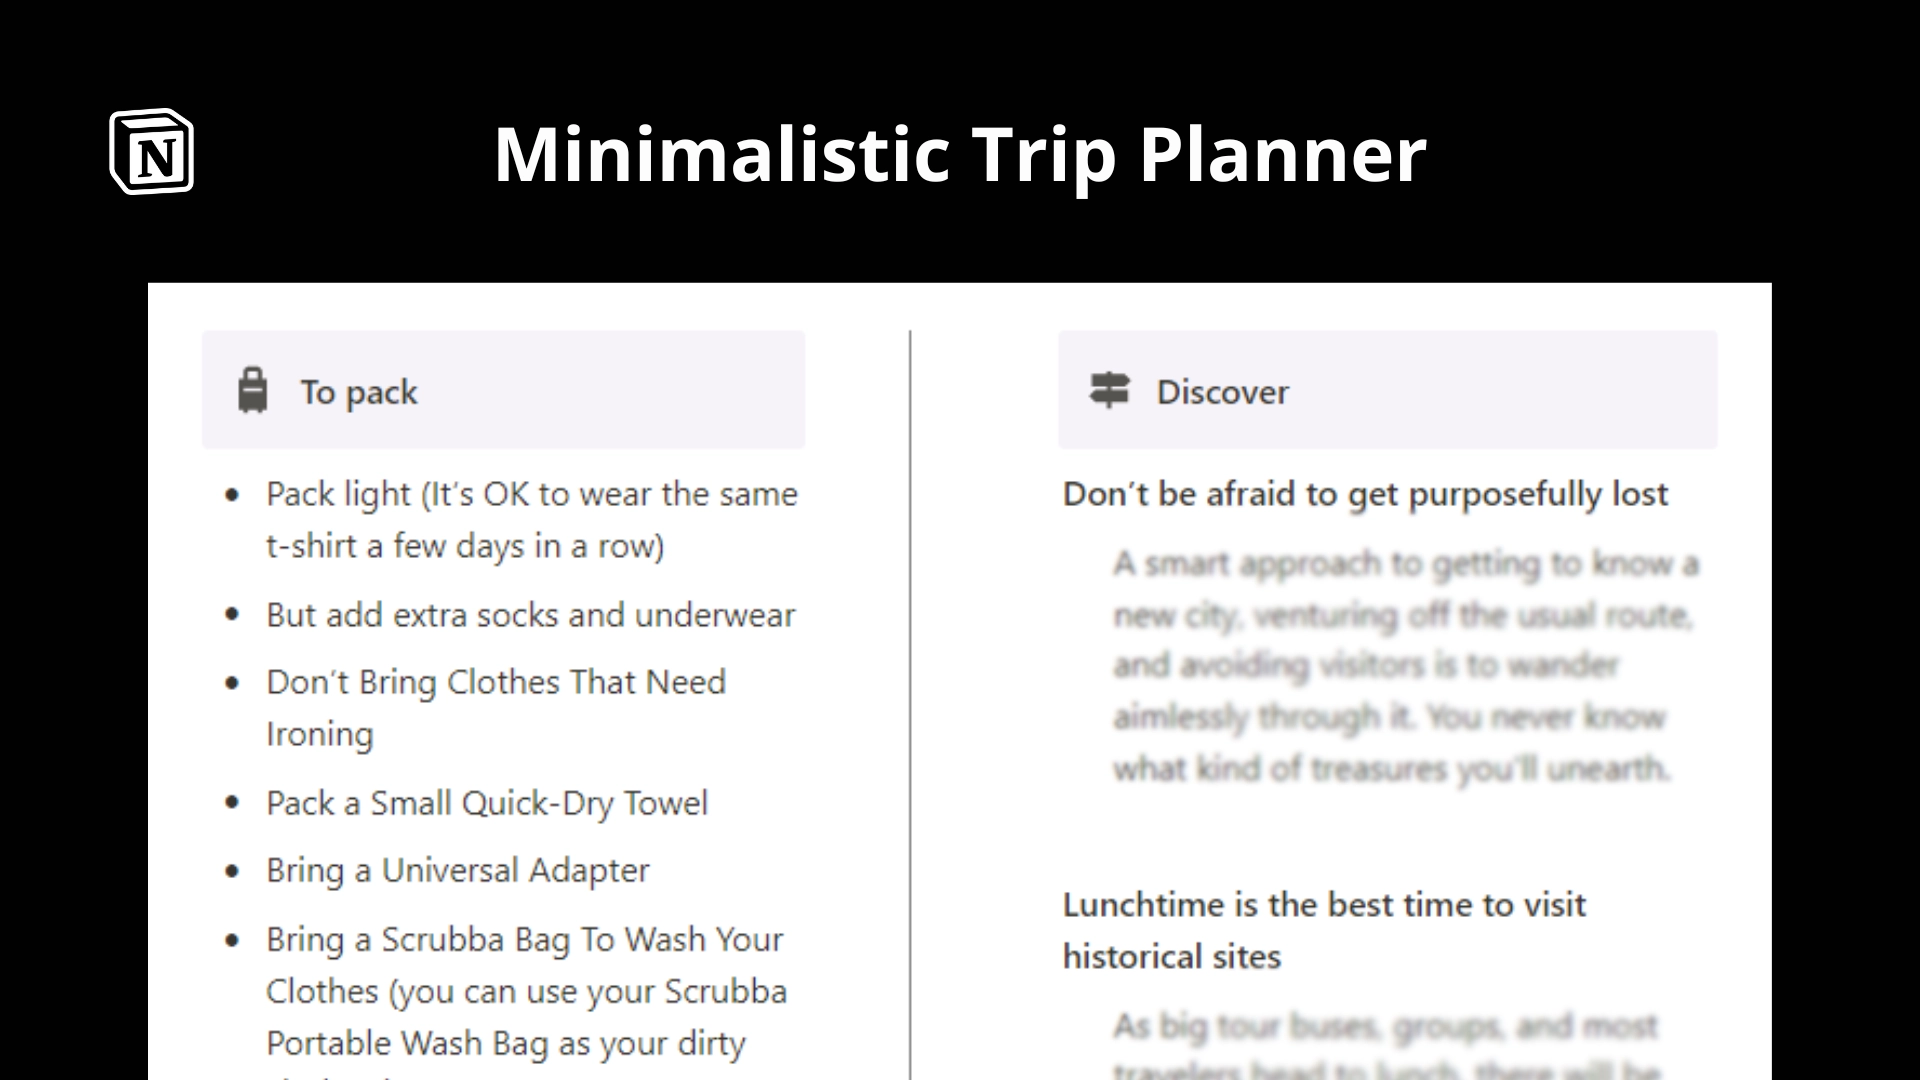 Minimalistic Trip Planner